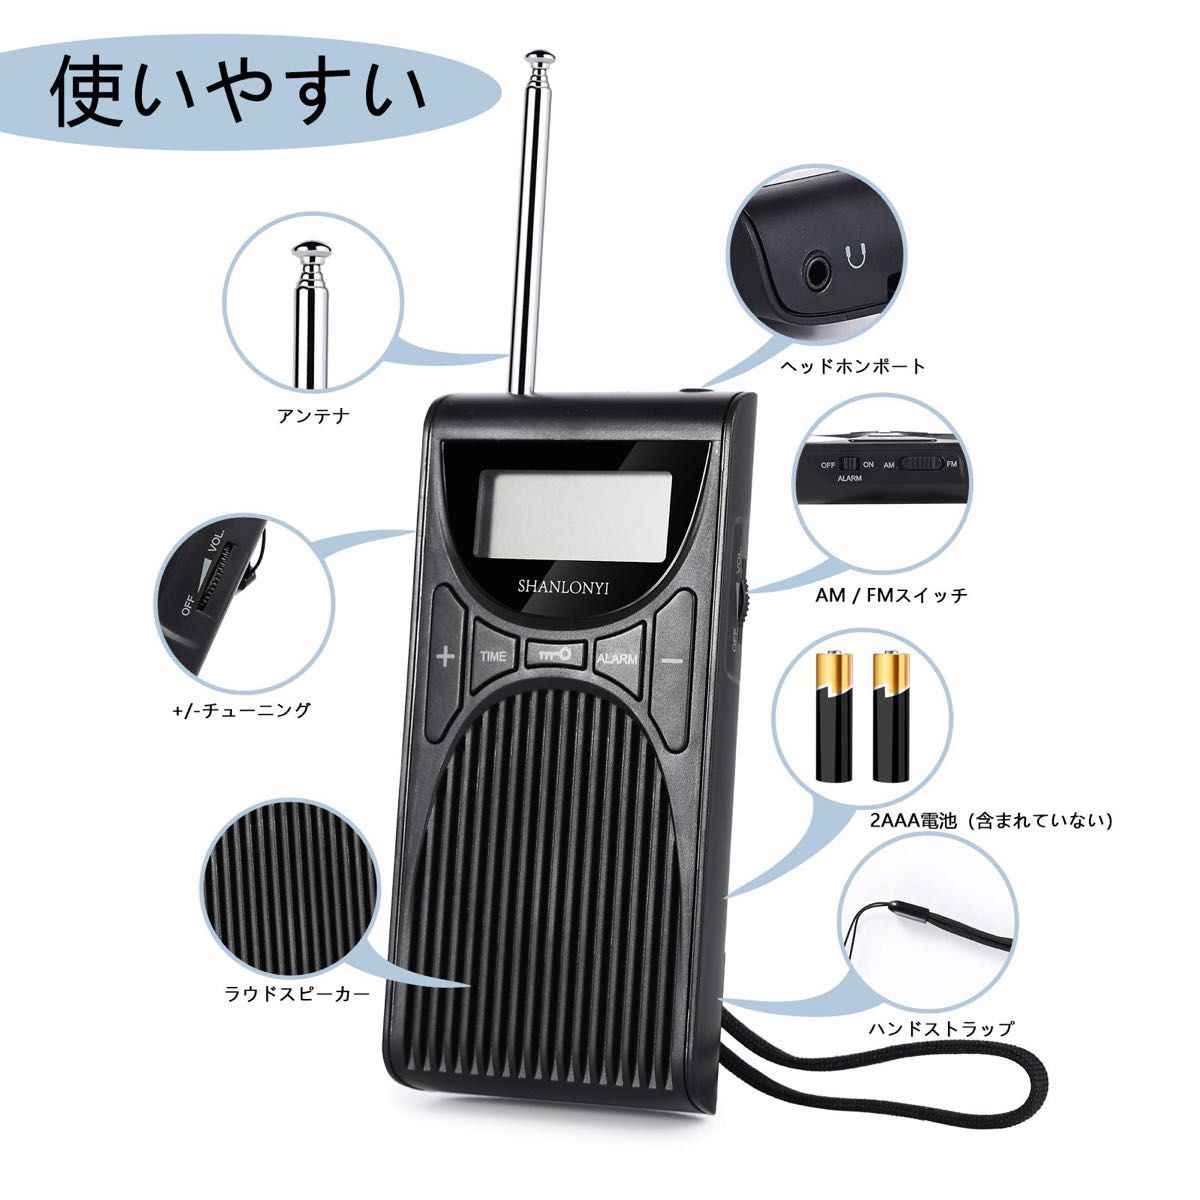 ポータブルラジオ 小型 ポケットラジオ 高感度 防災 ミニラジオ FM/AM/ワイドFM対応 乾電池式 多機能 